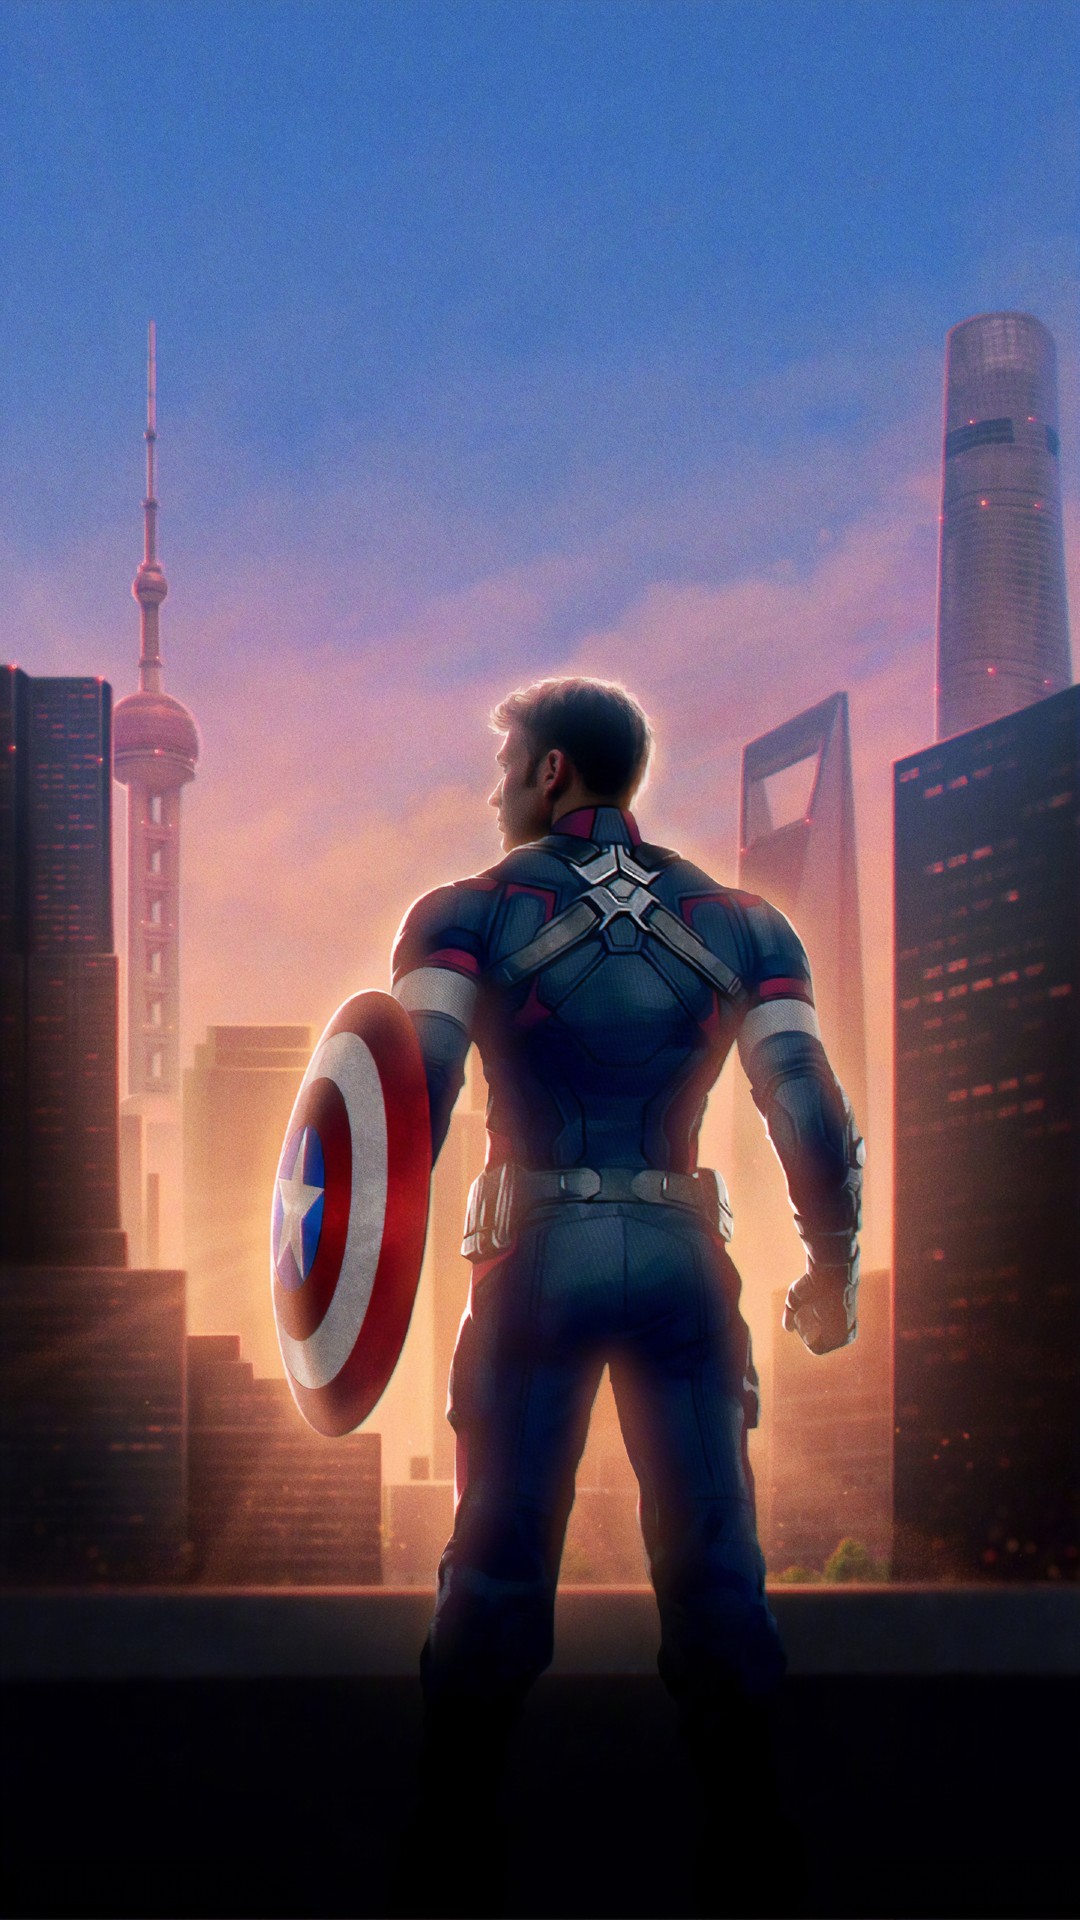 Captain America Avengers Endgame Wallpaper For iPhone 3d